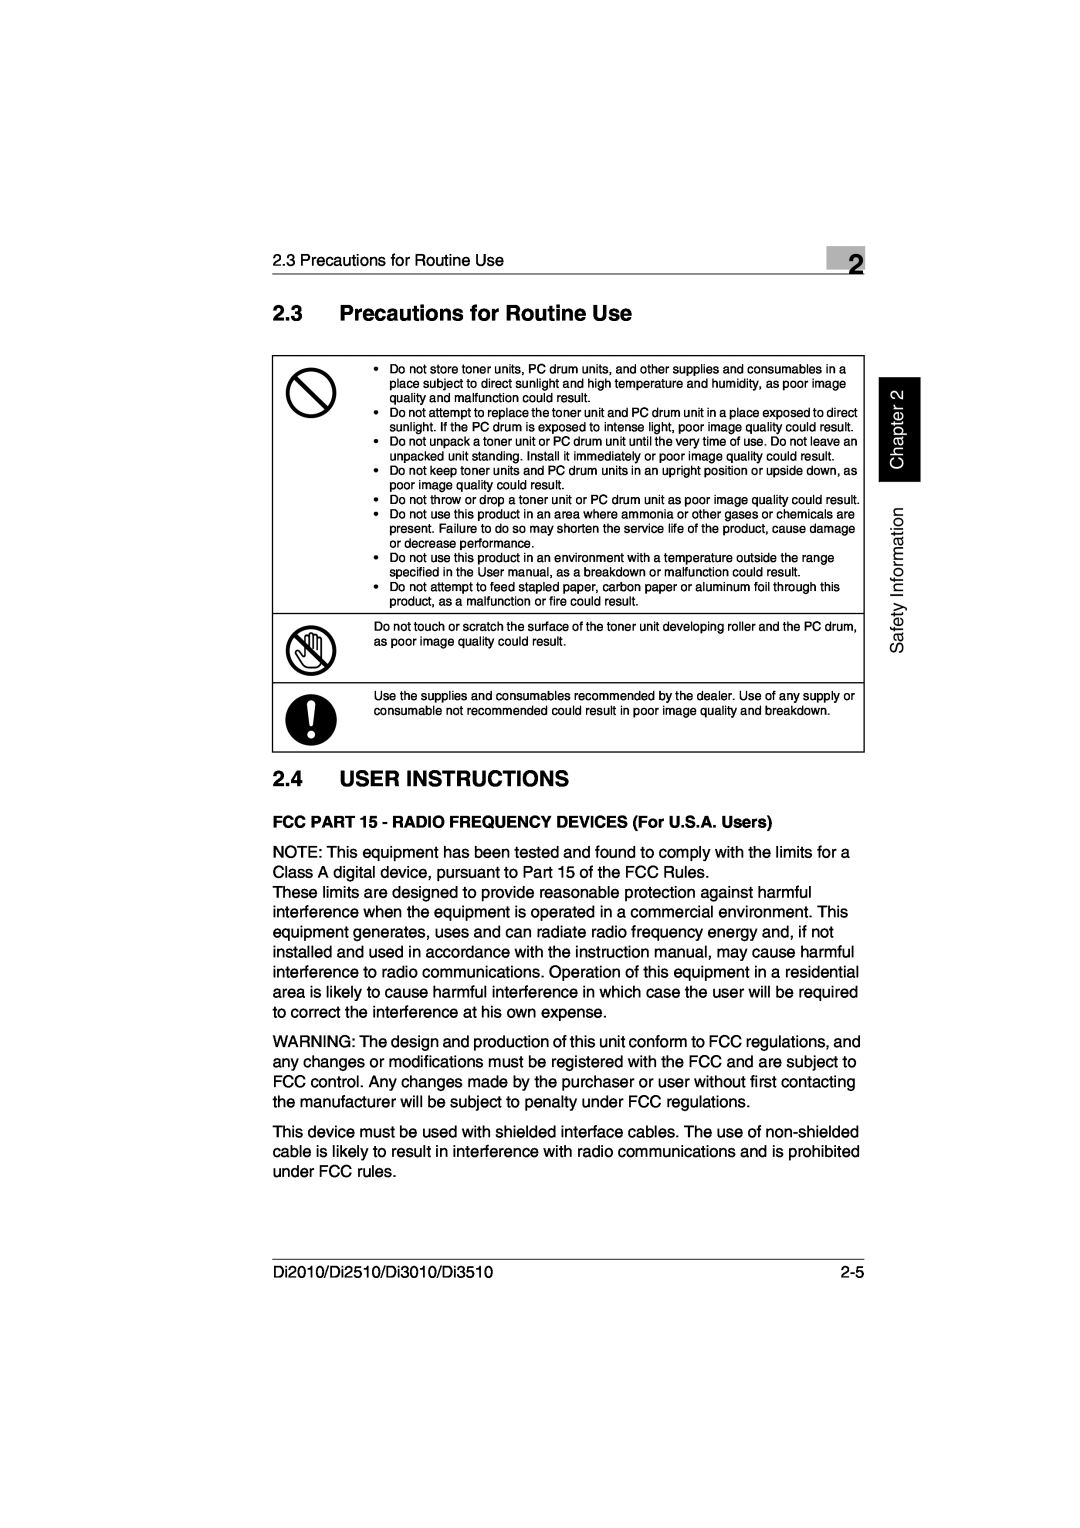 Minolta DI2510, DI2010, DI3010, Di3510 user manual Precautions for Routine Use, User Instructions, Safety Information Chapter 